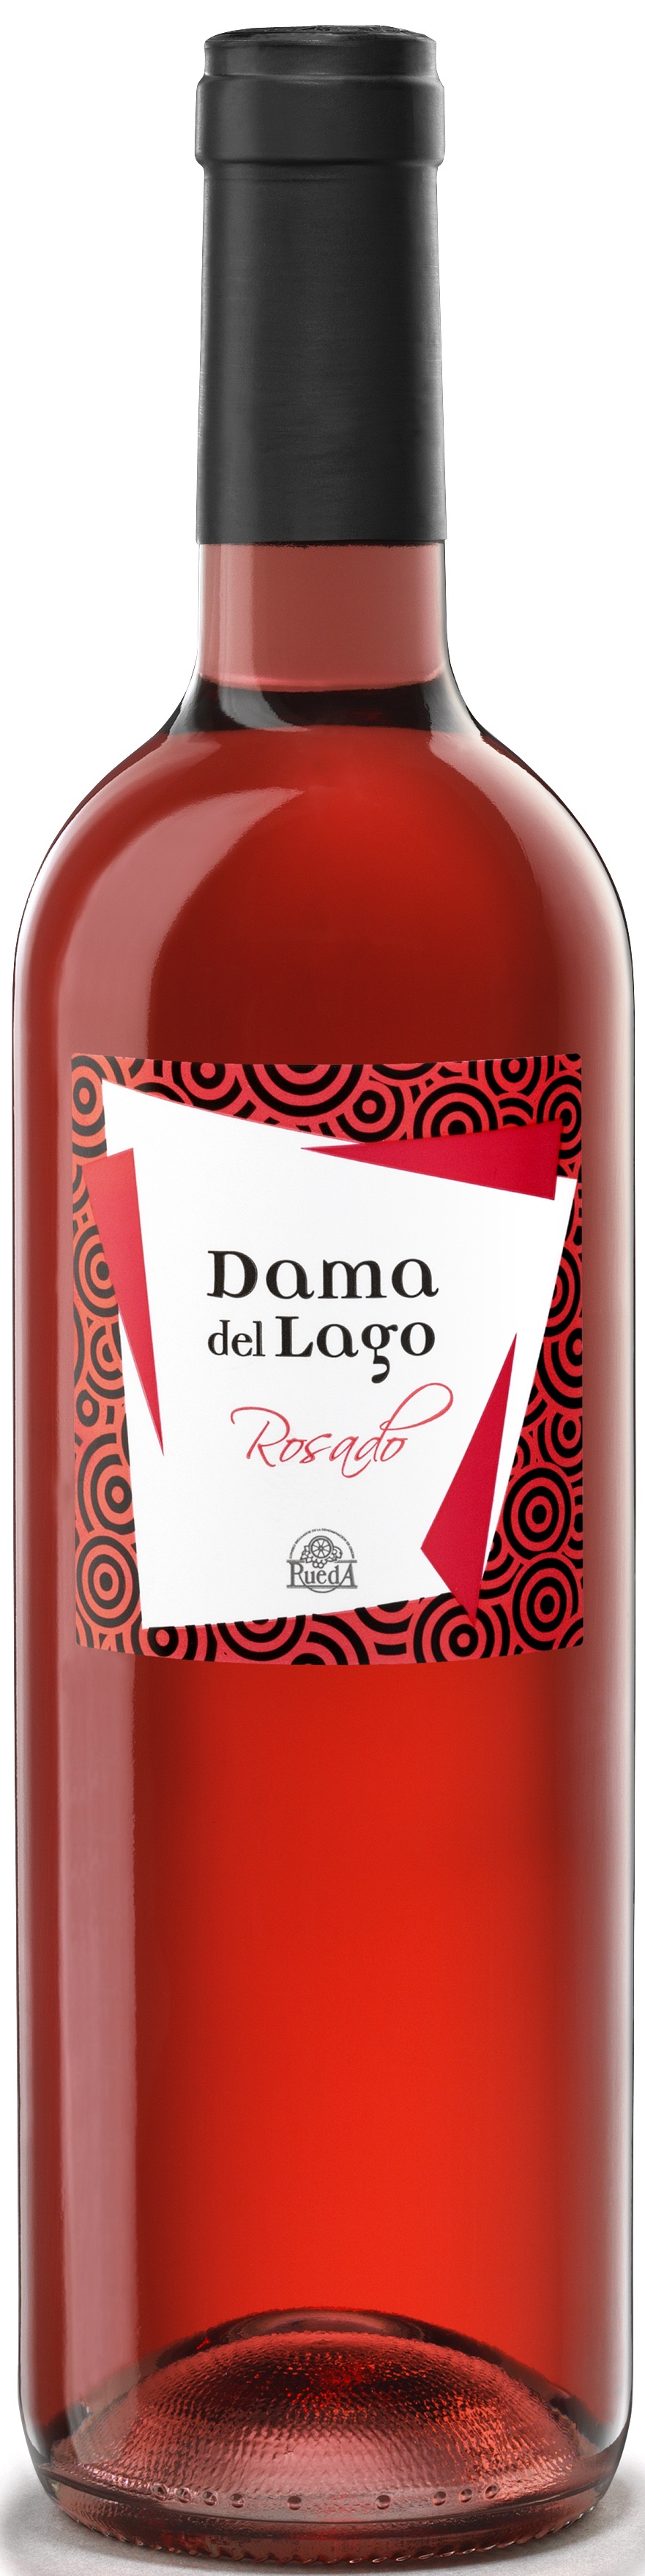 Logo del vino Dama del Lago Rosado